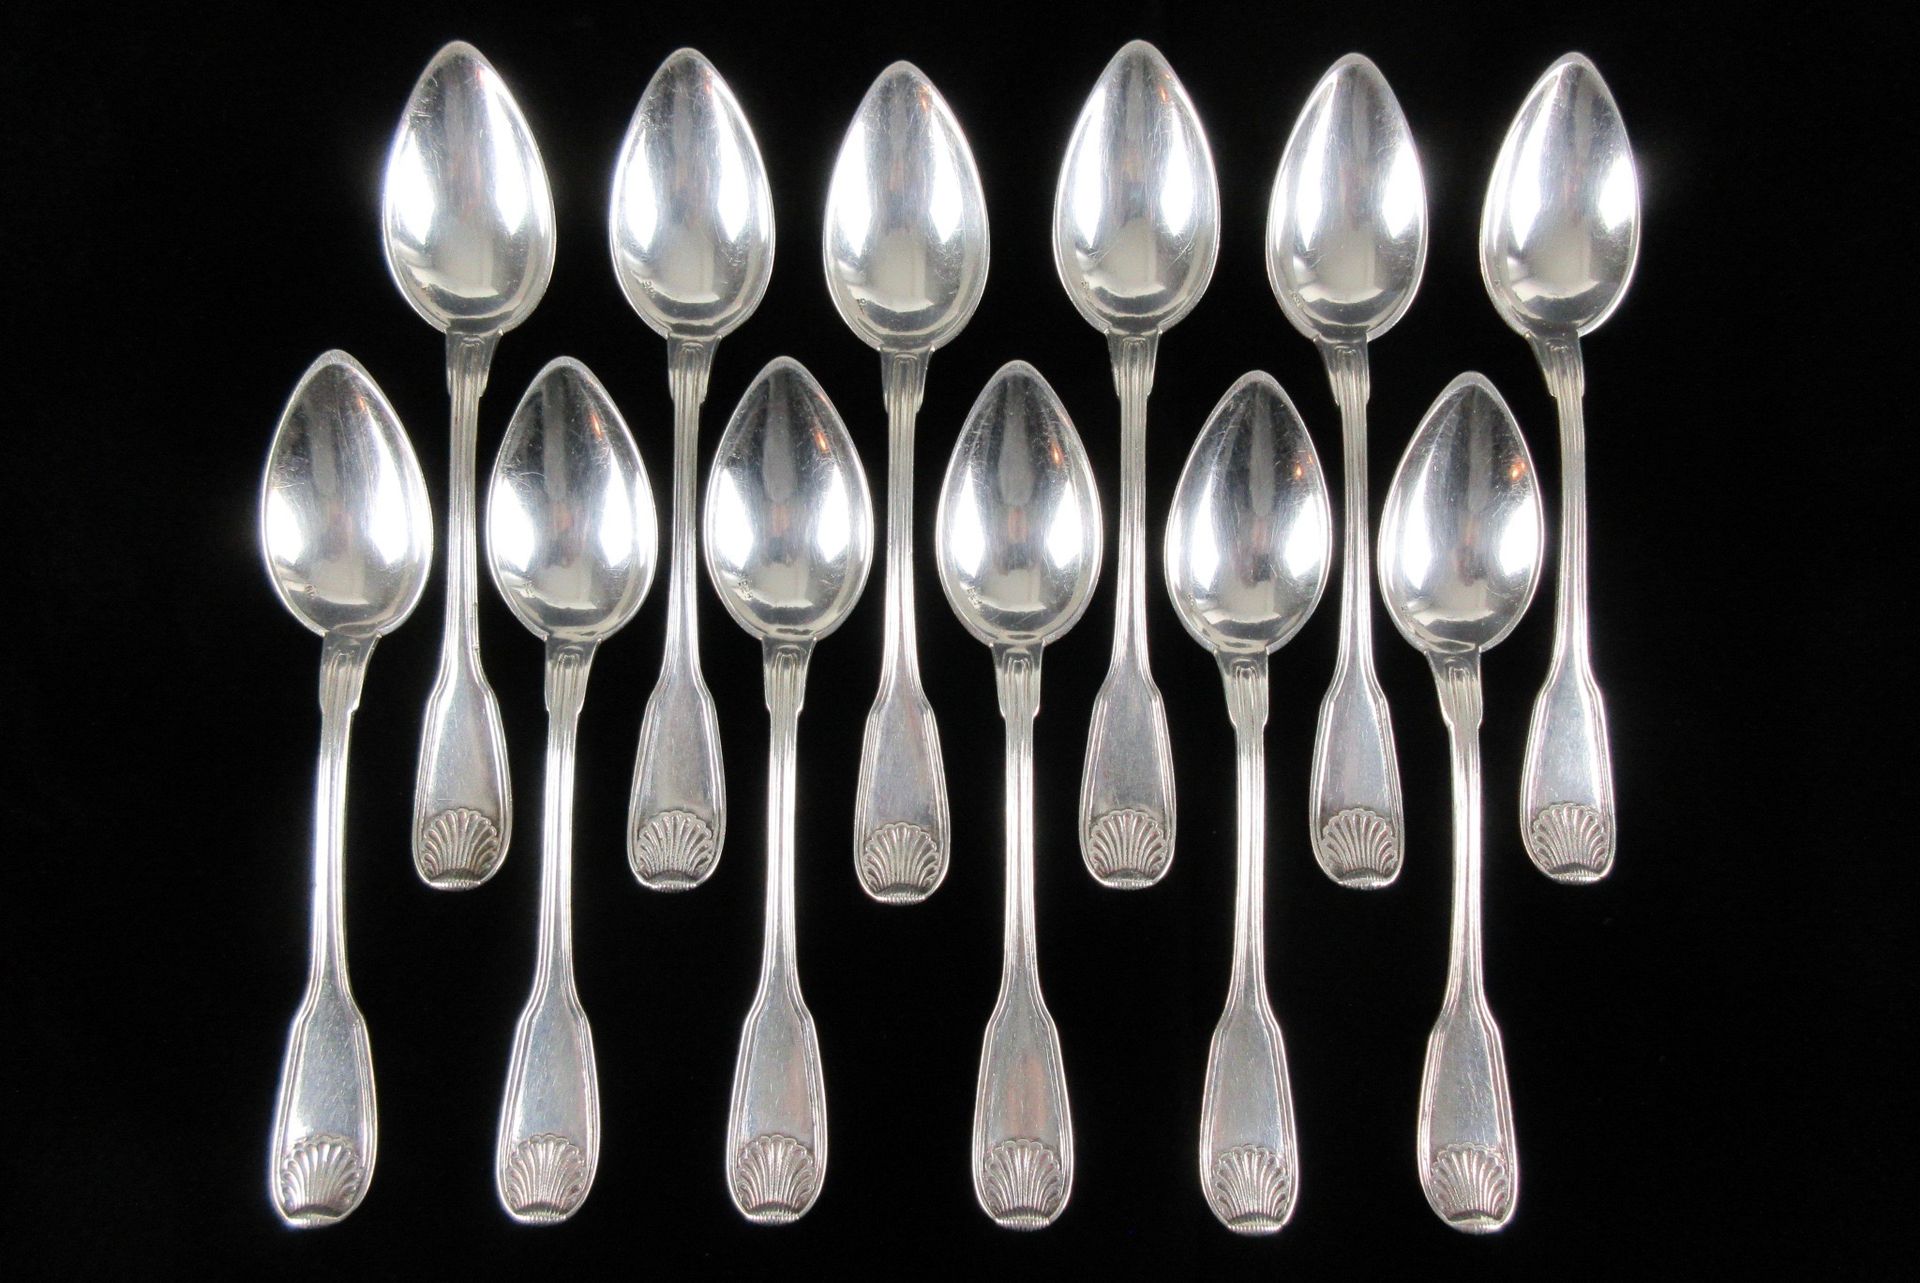 Null 比利时银器。12把银质咖啡勺或茶勺，印有800千分之一的标记，带贝壳装饰，长13.4厘米，重228克，状态：优良